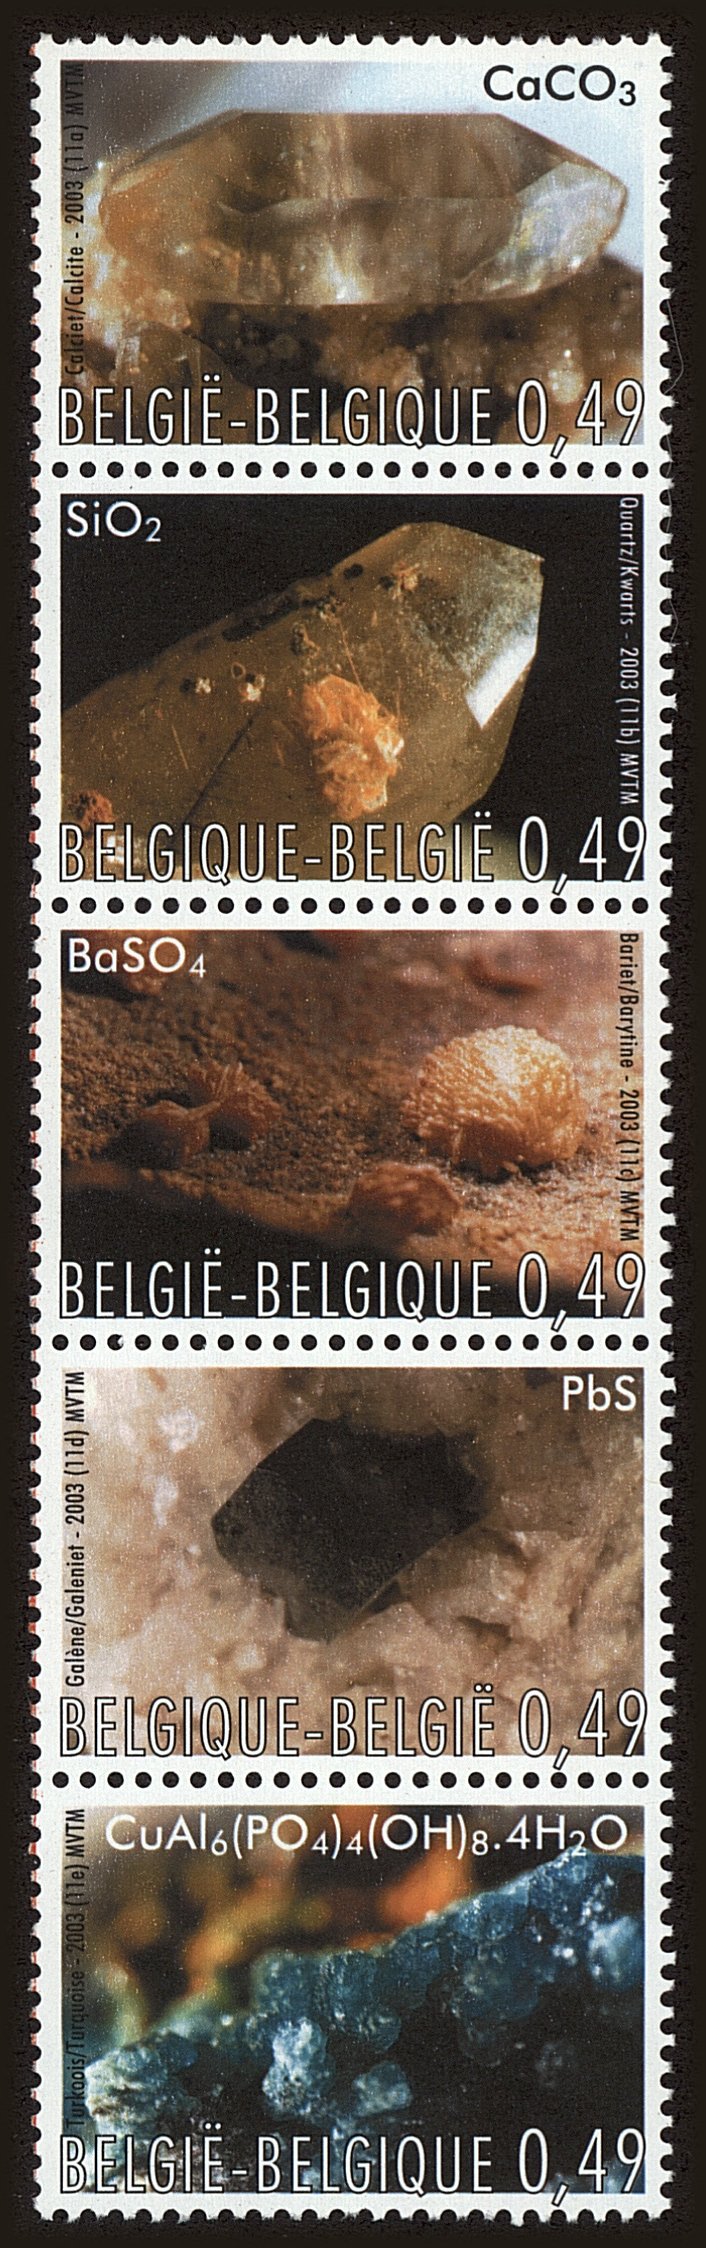 Front view of Belgium 1960 collectors stamp